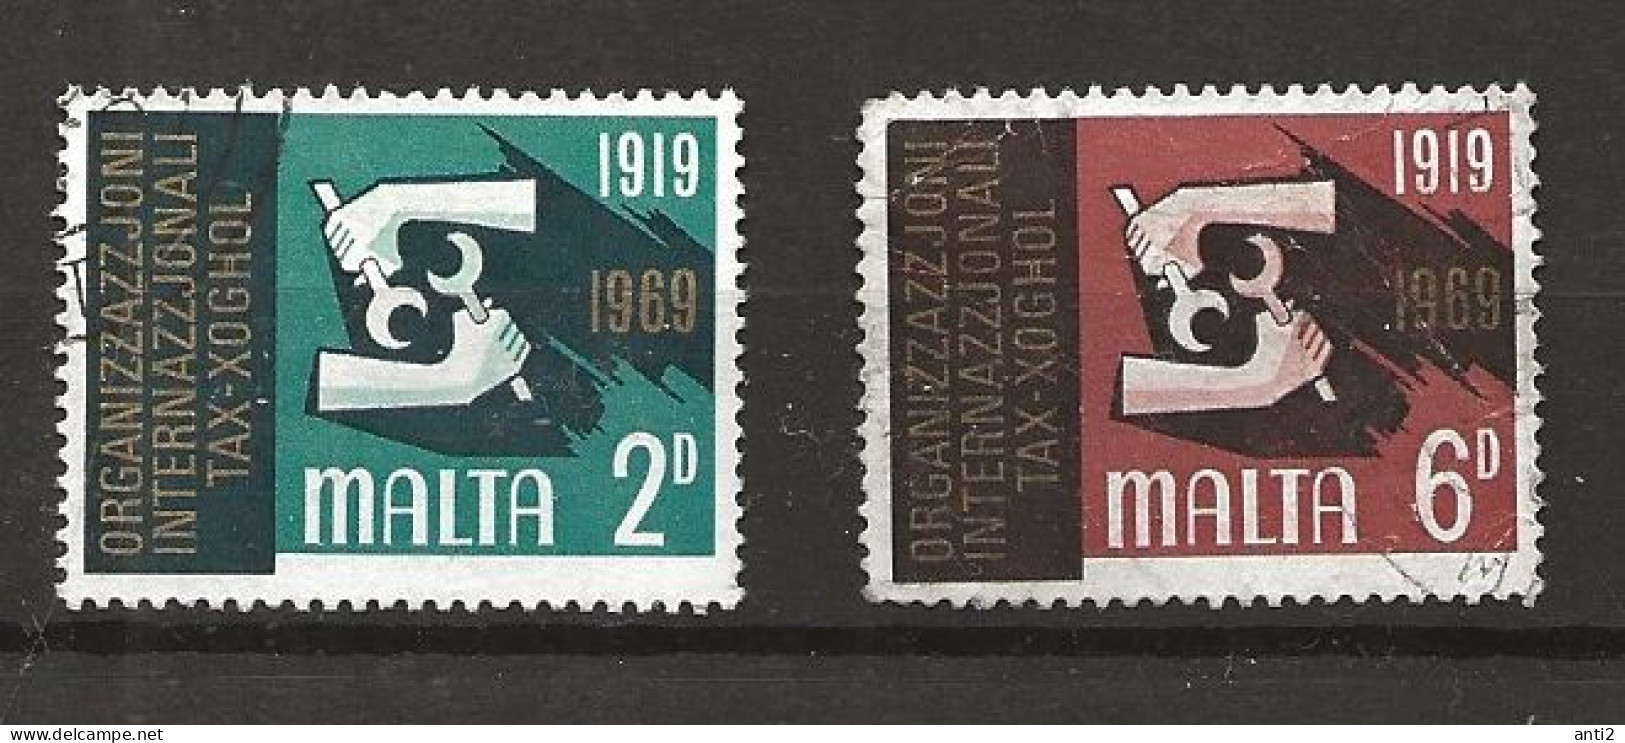 Malta 1969 50th Anniversary Of The International Labour Organisation (ILO), Mi 387-388 Cancelled(o) - Malte